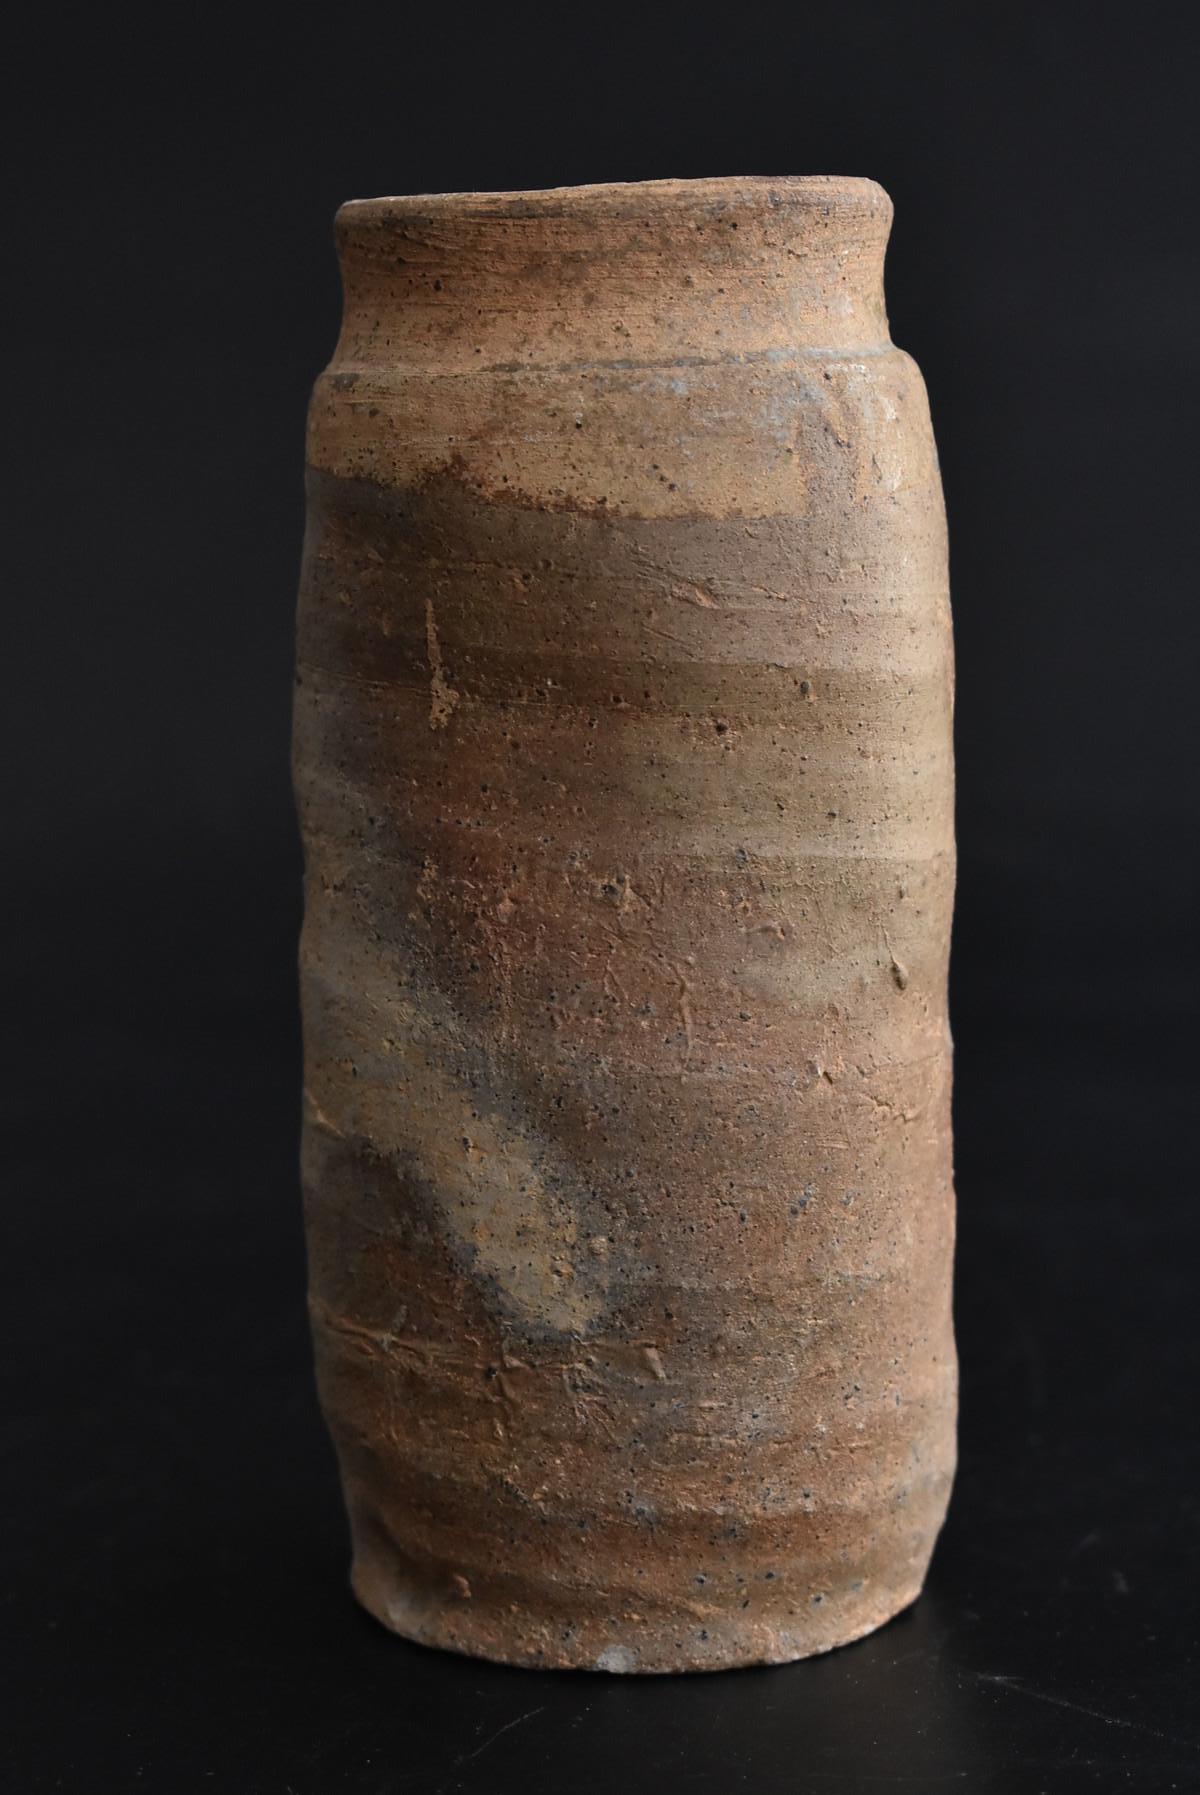 On pense que des poteries cuites dans le sud de la Chine au début de la dynastie Ming ont été importées au Japon.
Il s'agit d'une petite taille.
La partie supérieure est légèrement vitrée.
La gradation des couleurs créée par le réglage de la